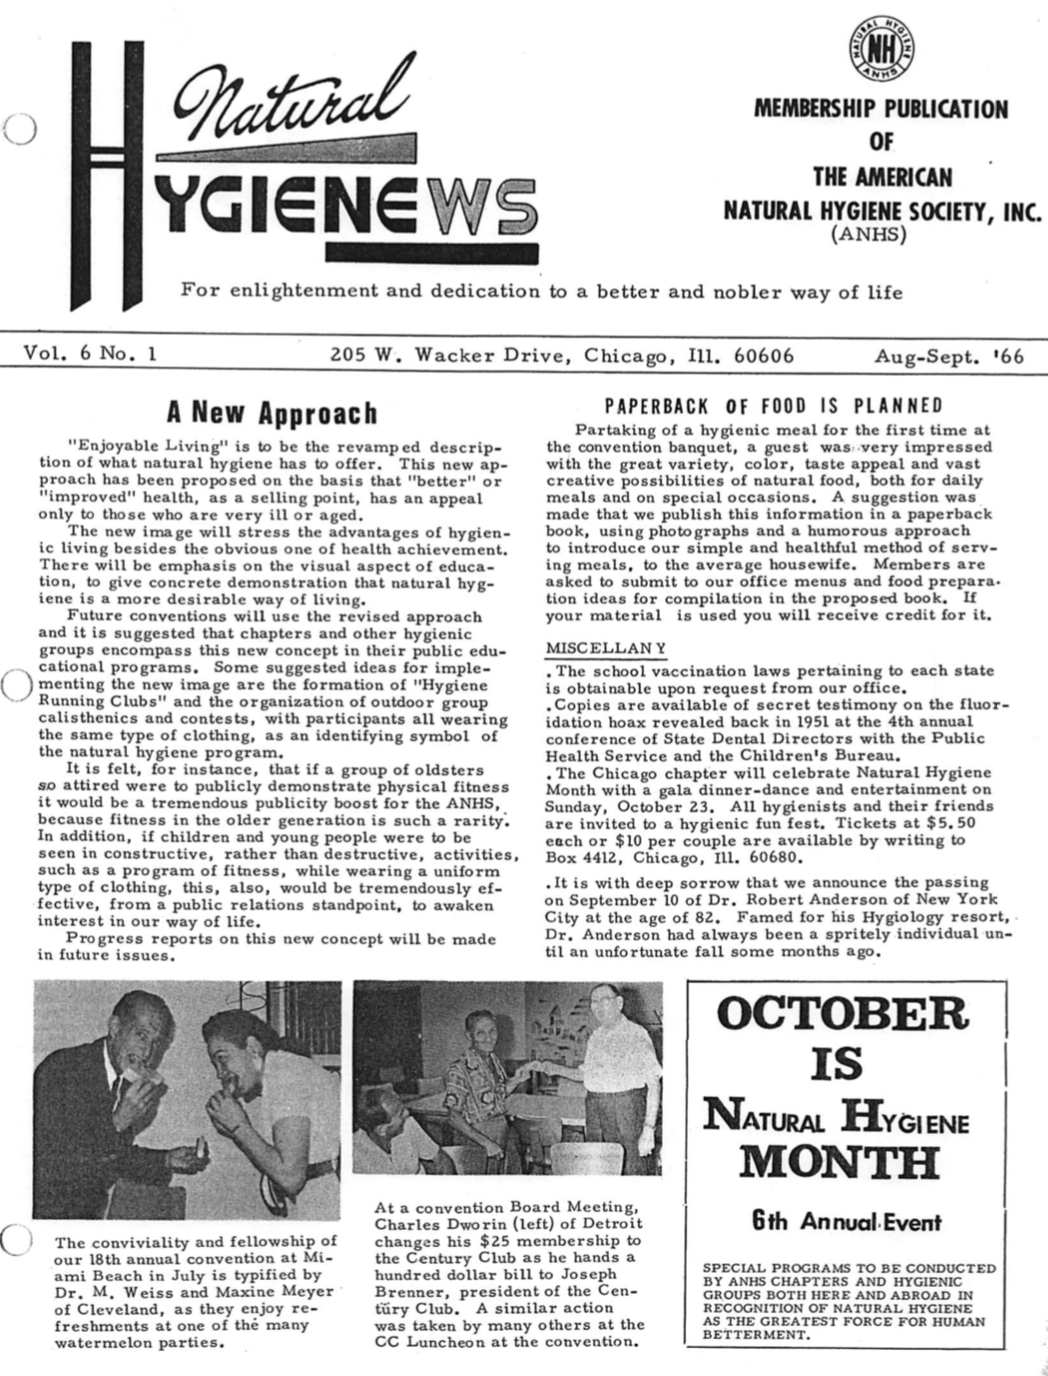 August-September 1966